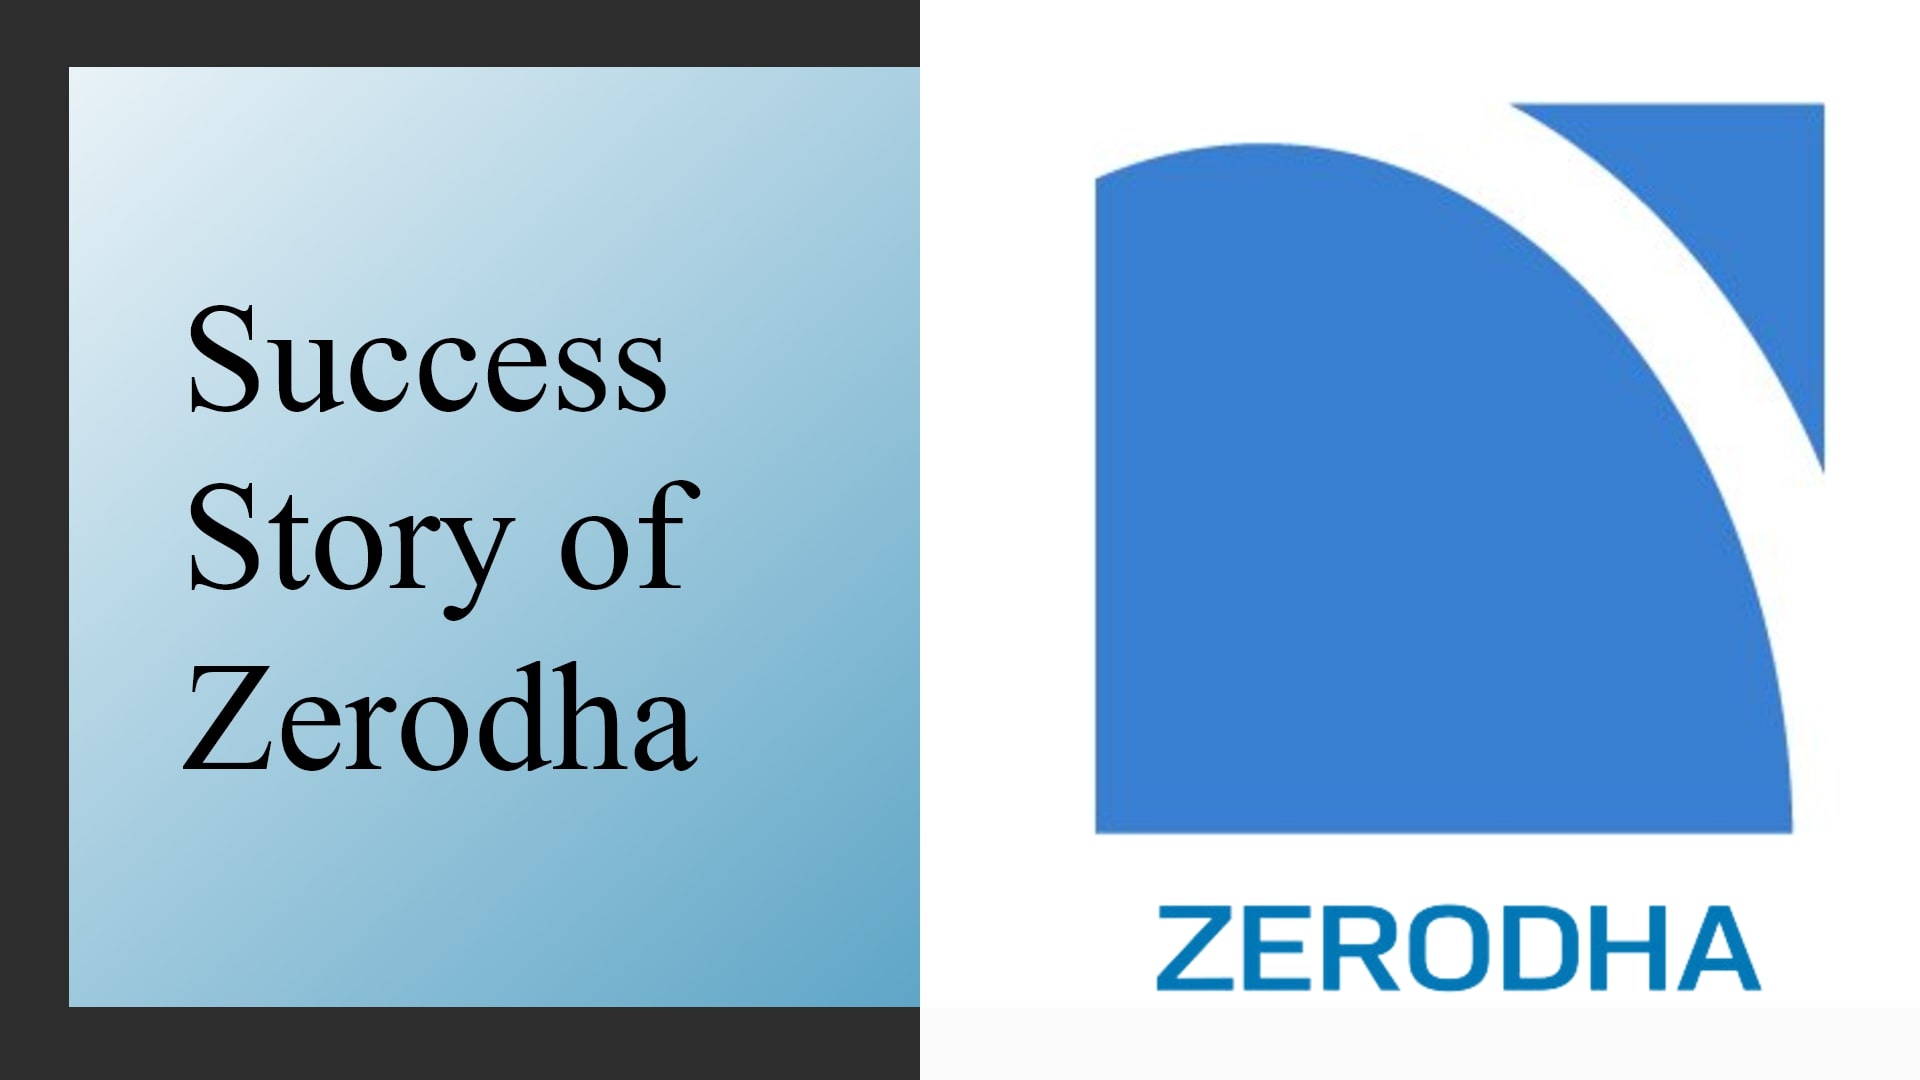 Zerodha Success Story